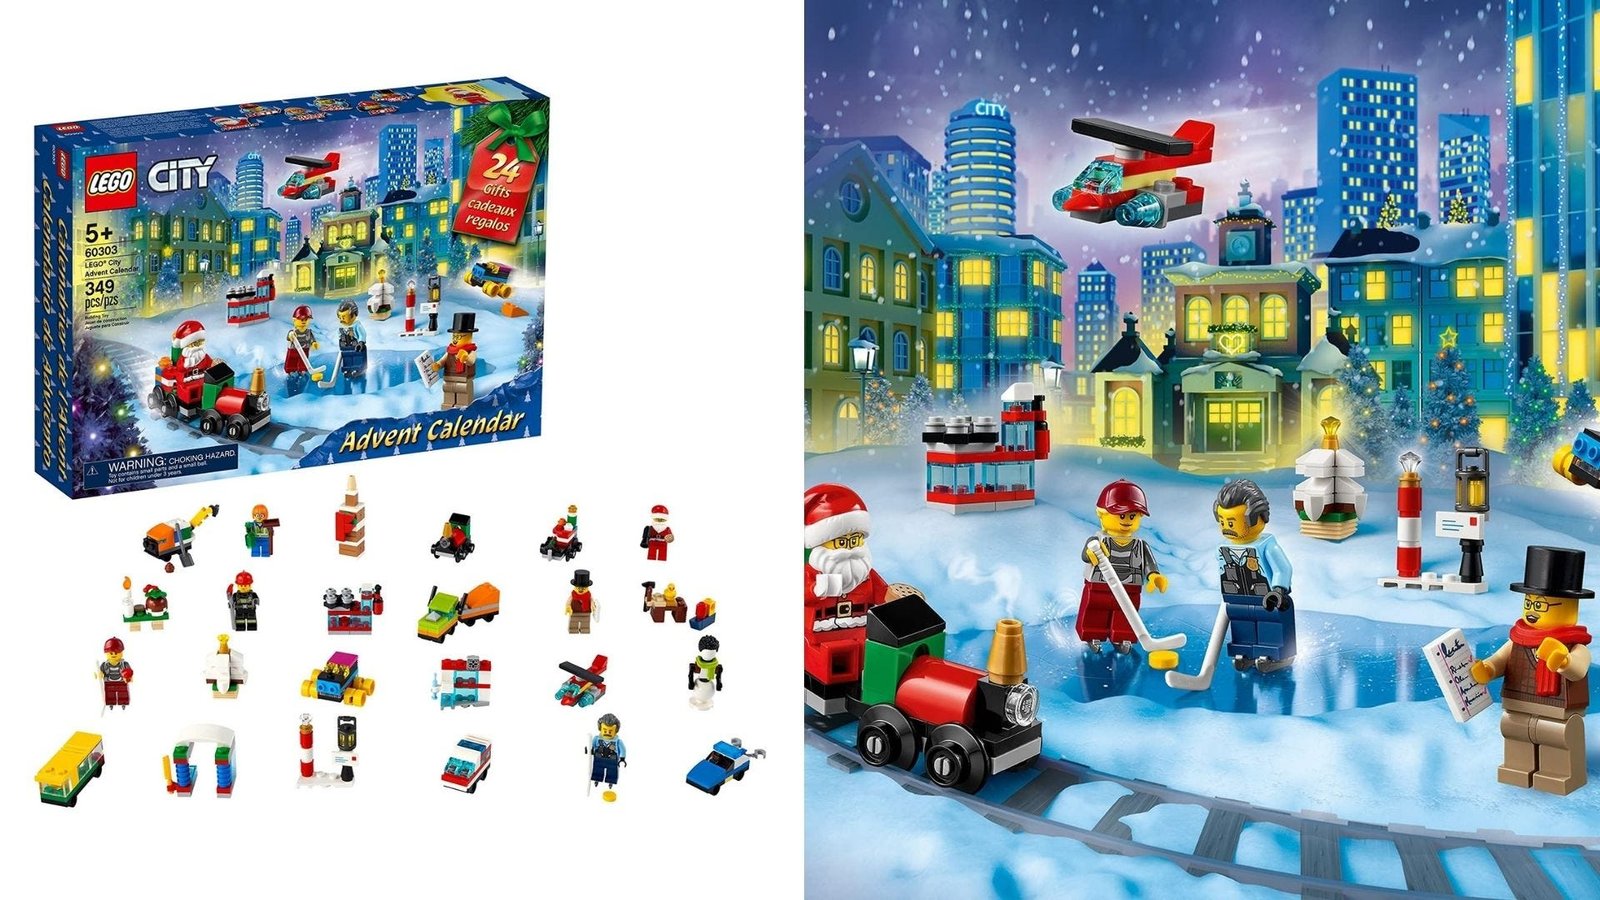 Les figurines et accessoires du calendrier de l'avent LEGO City.